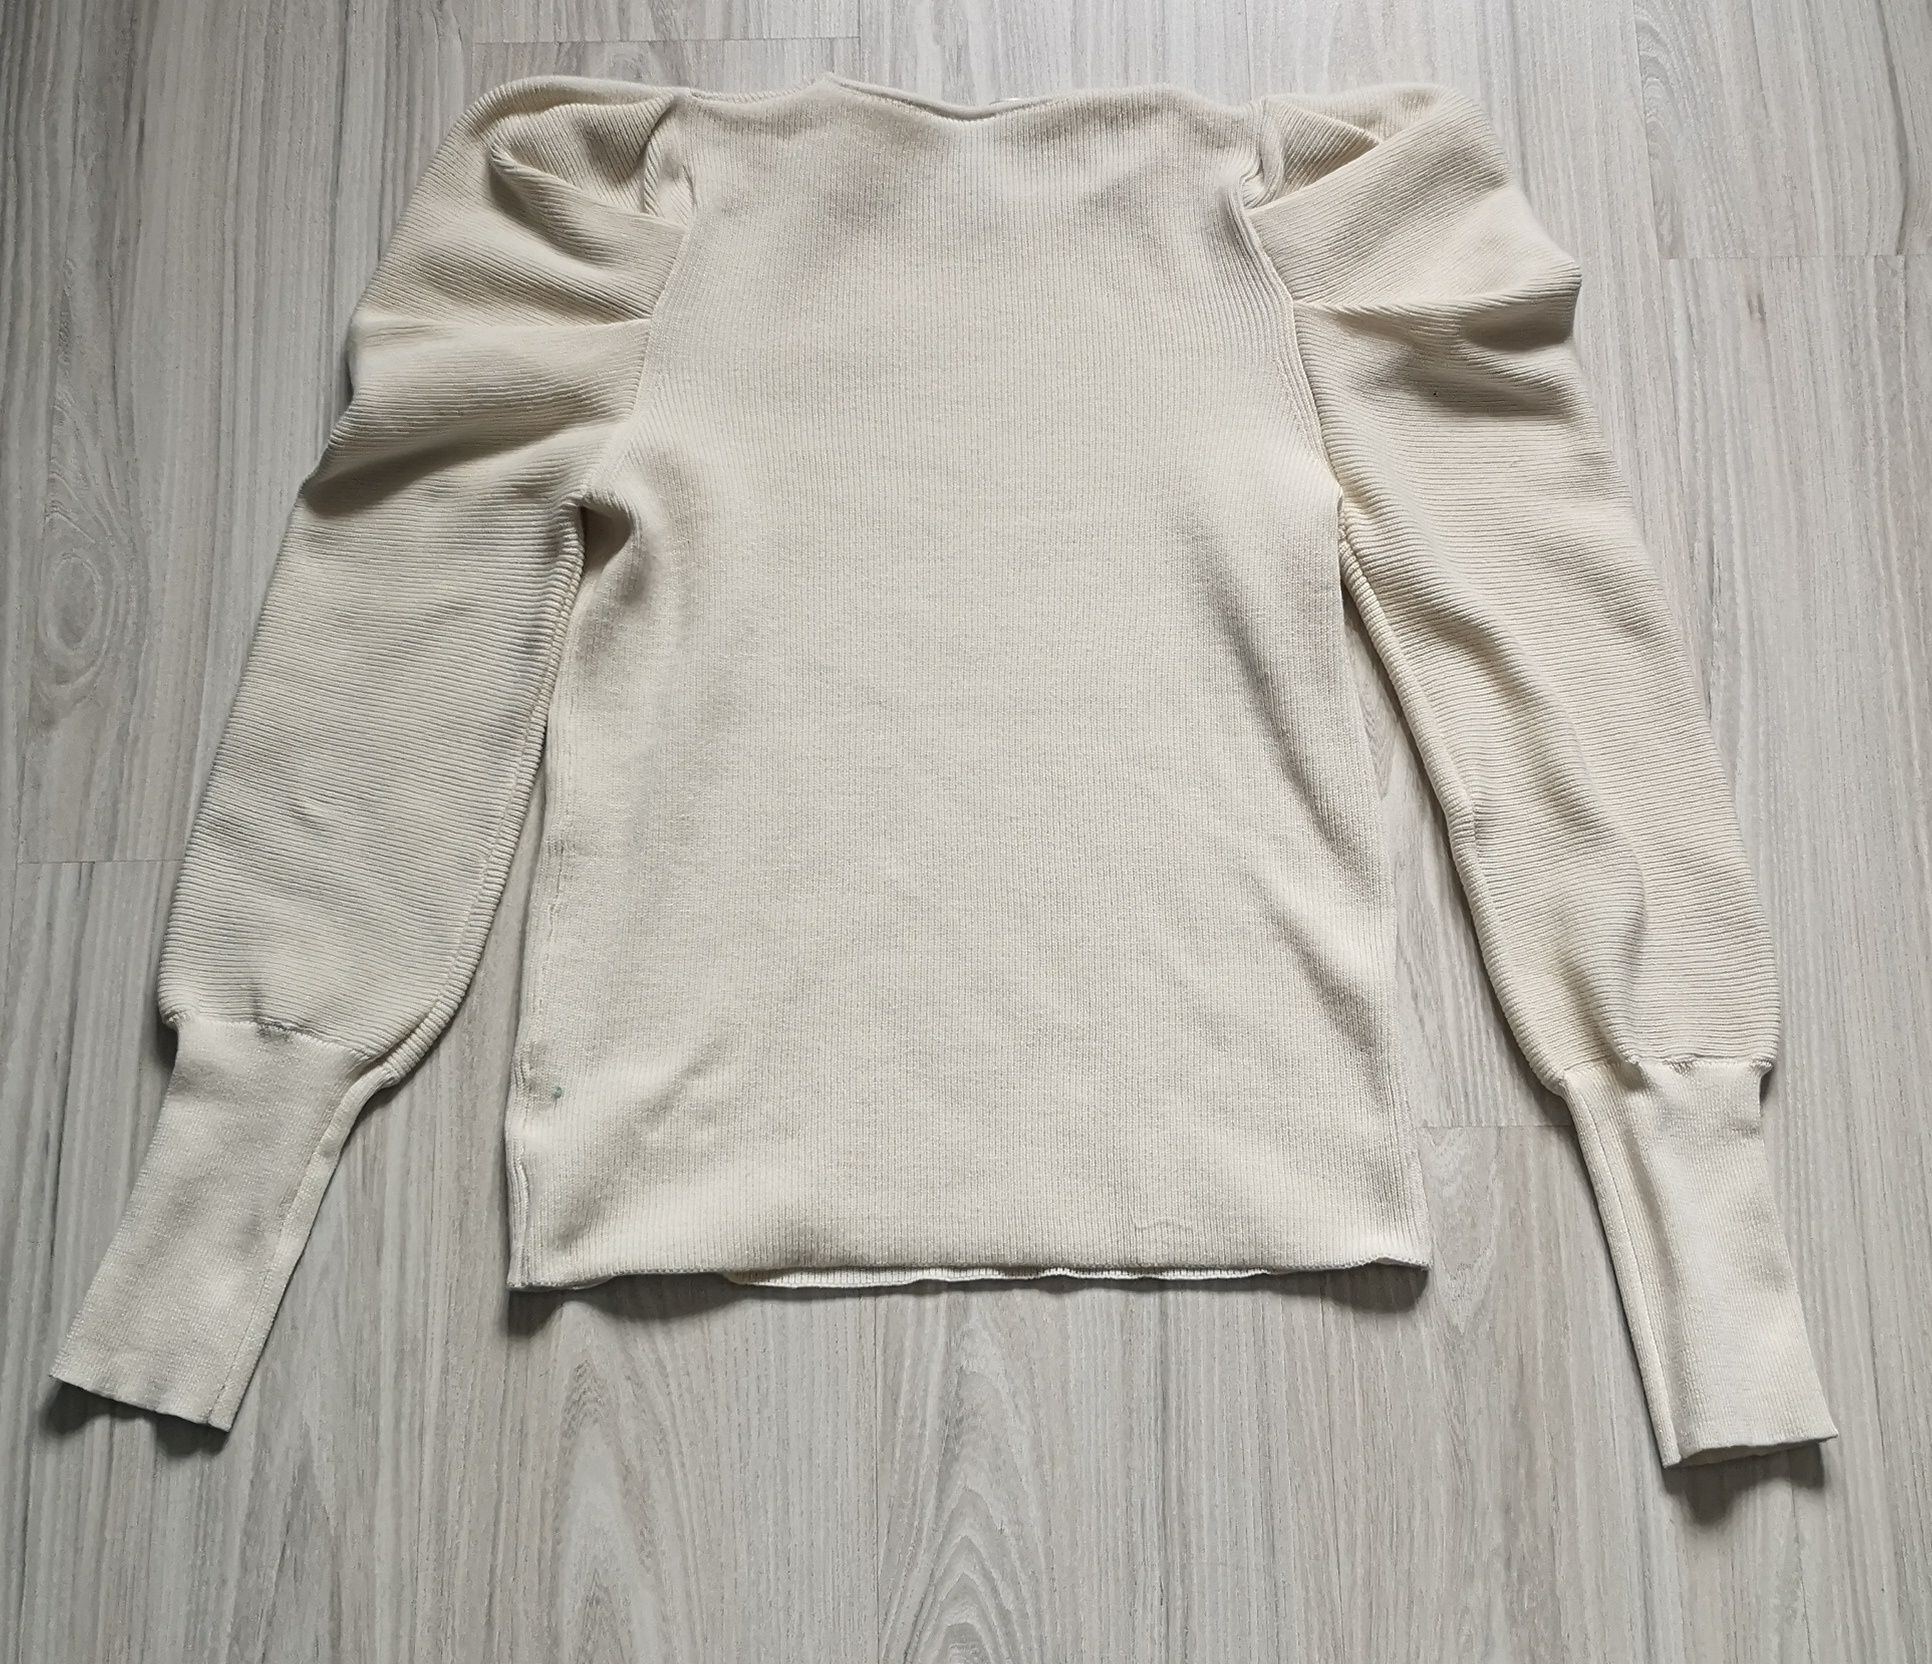 Kremowy damski sweter z bufianiastymi rękawami rozmiar M